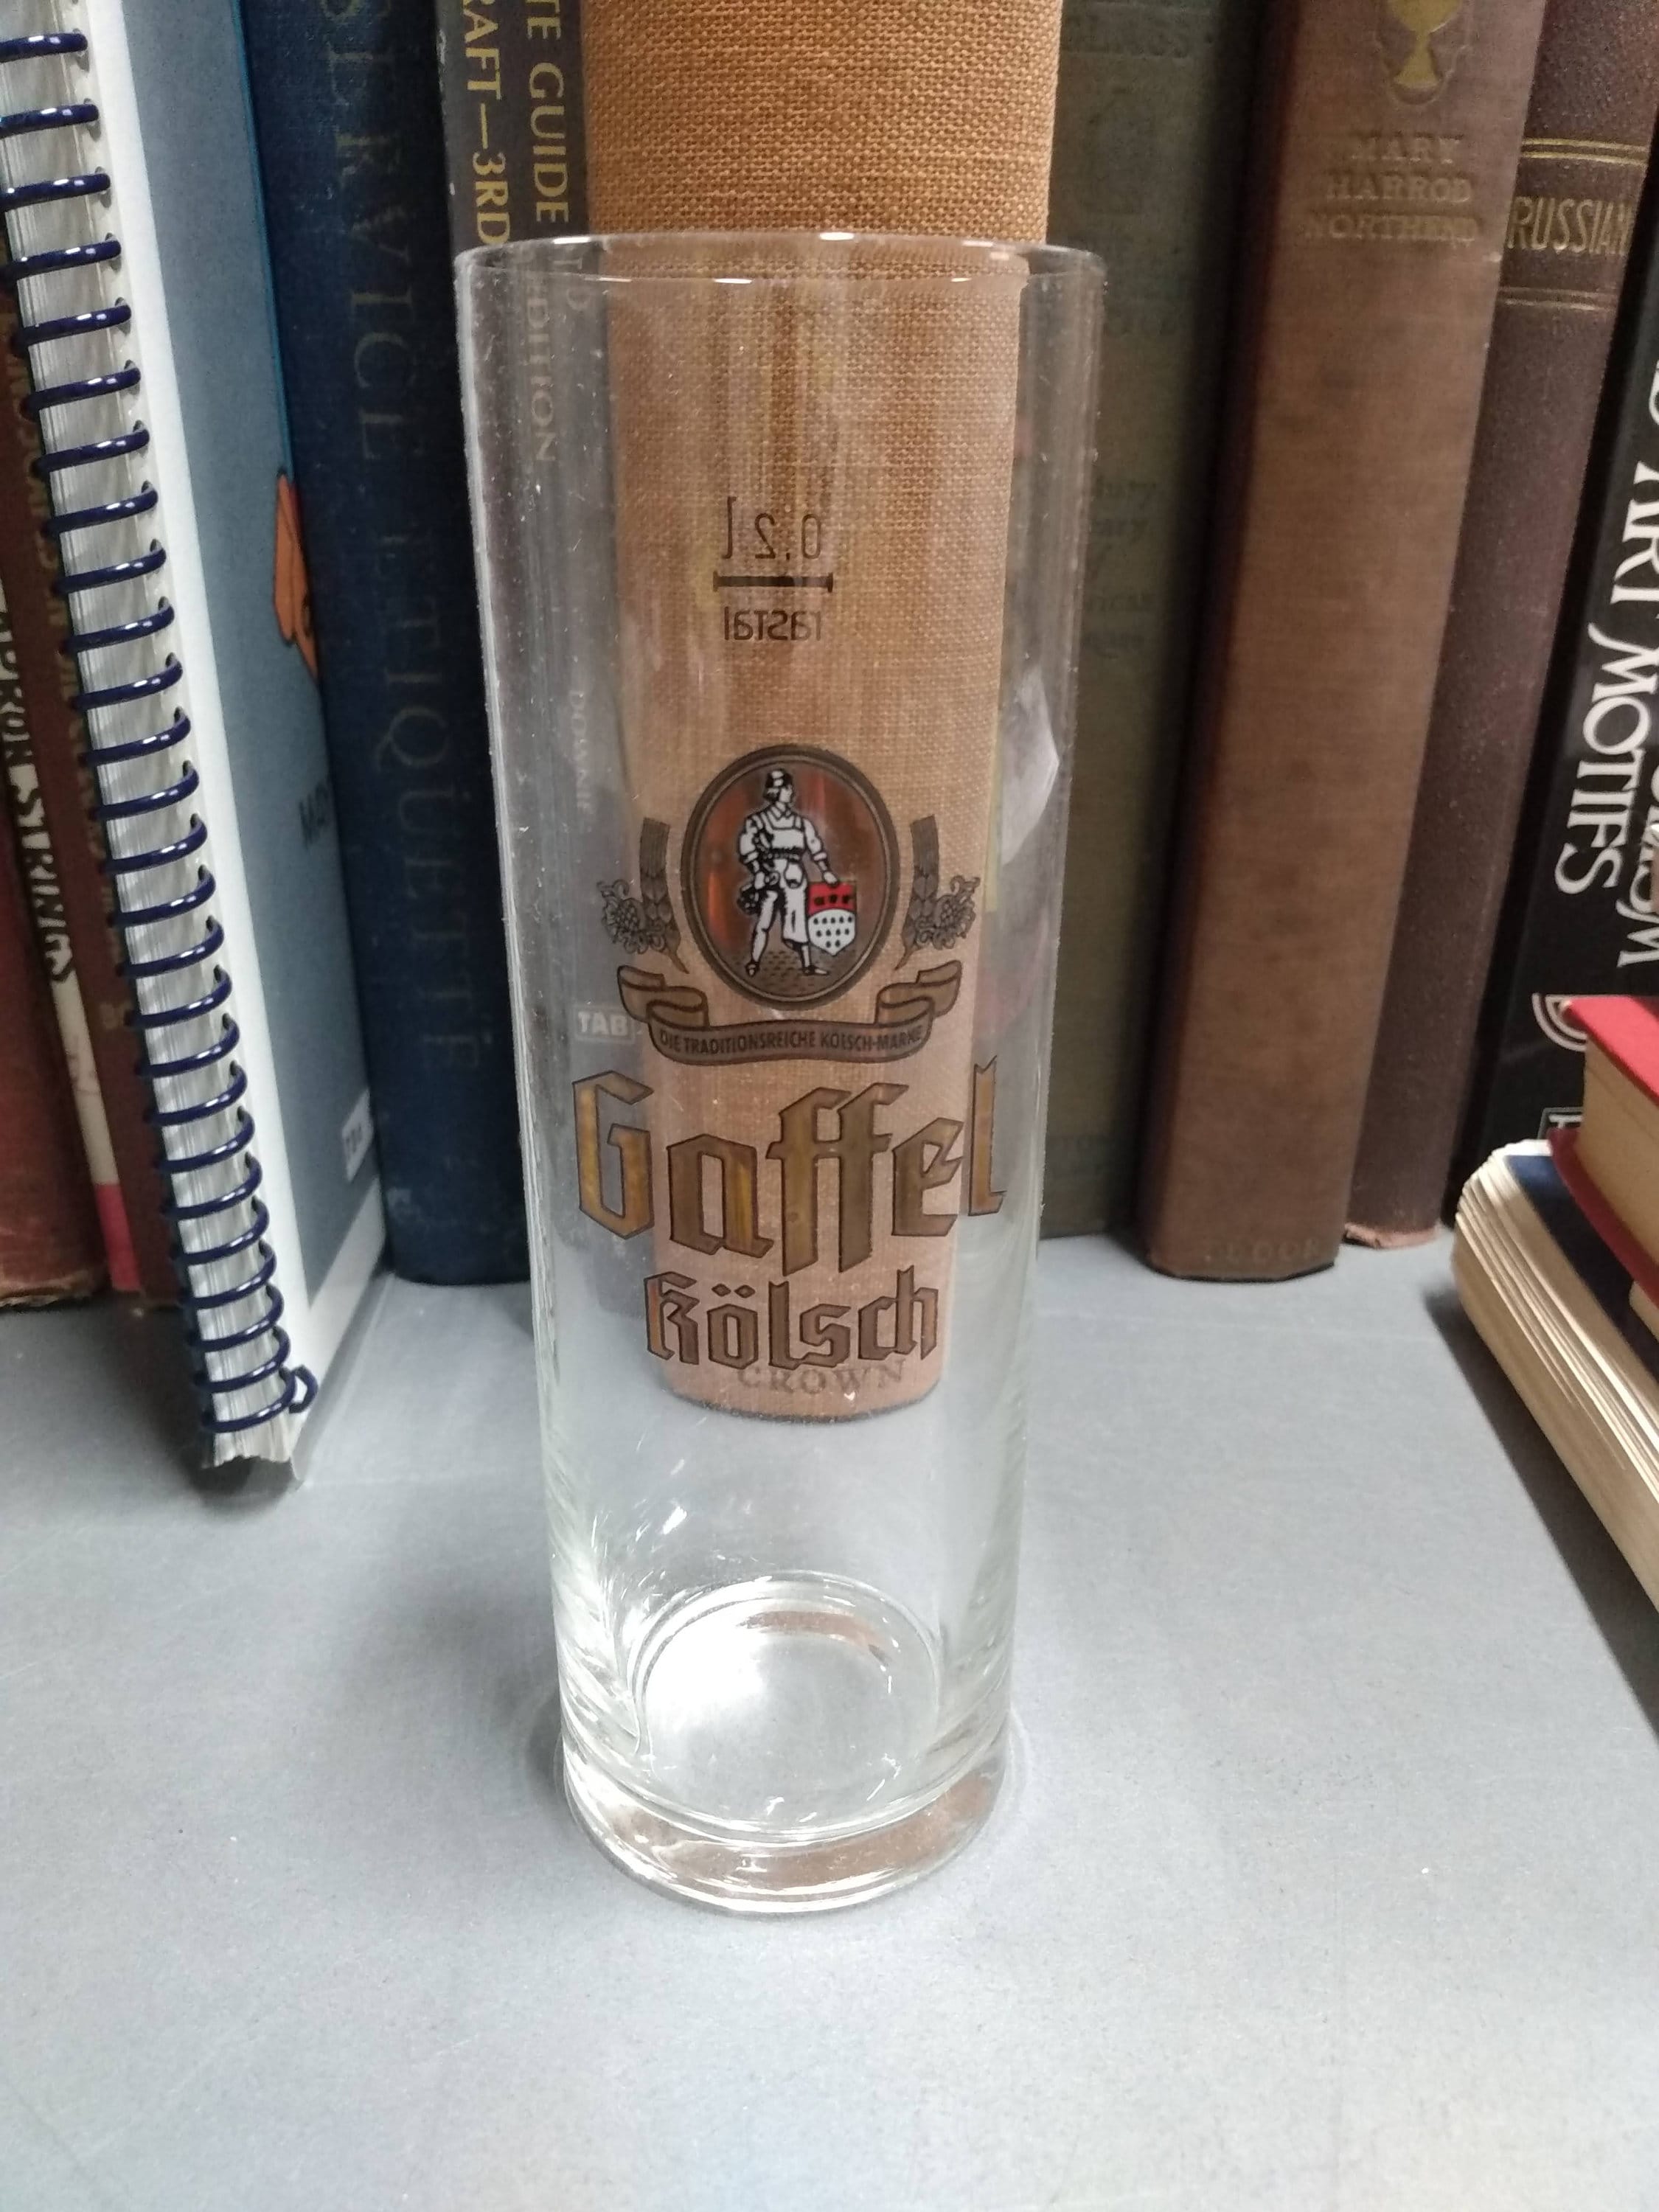 Gaffel Kolsch NEW German Beer Glass 0.2 Liter 